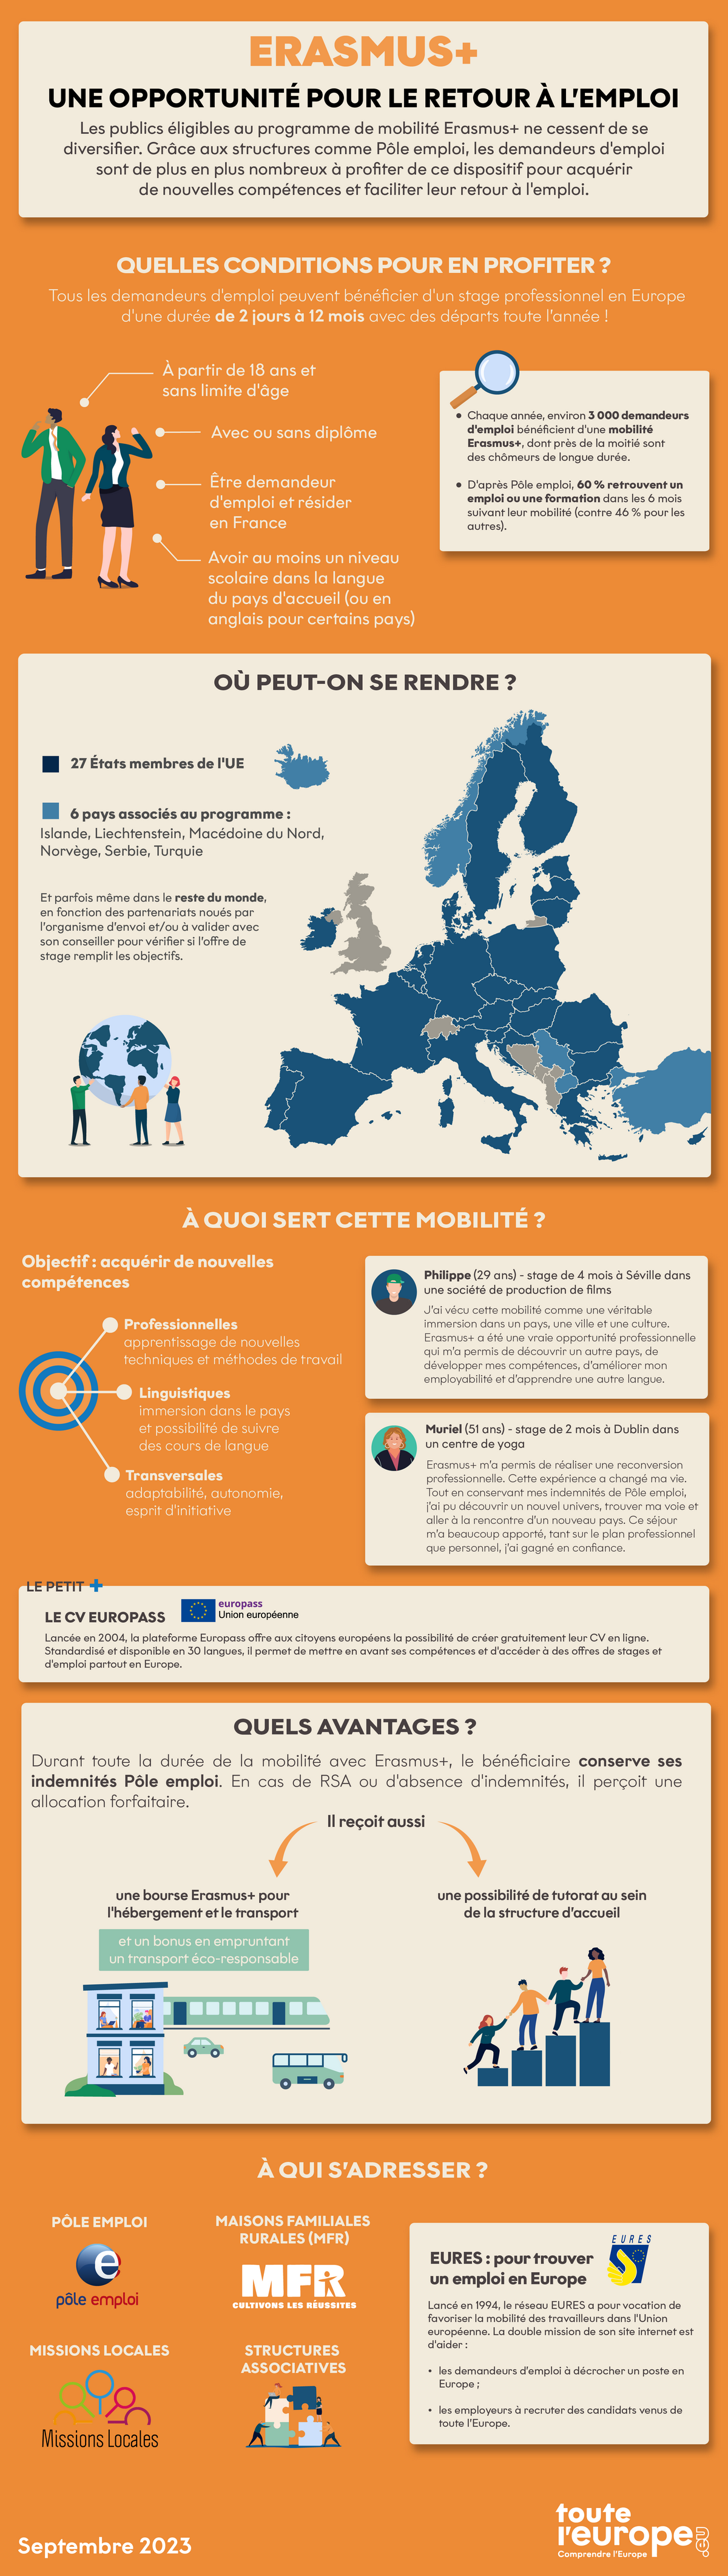 [Infographie] Erasmus +, une opportunité pour le retour à l'emploi